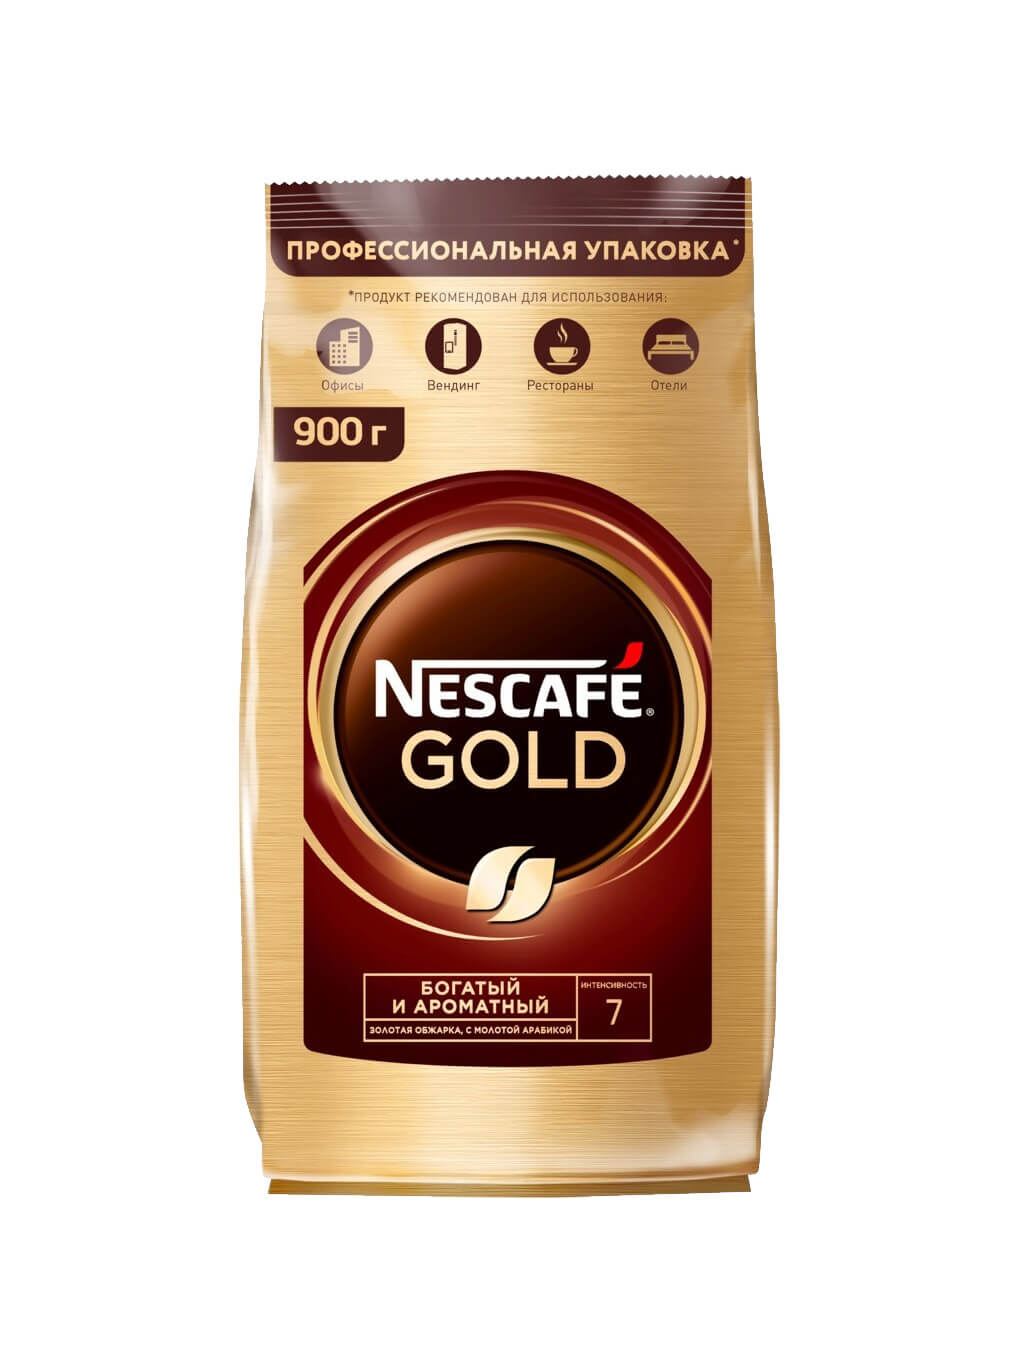 Купить кофе голд 500 гр. Nescafe кофе Gold 900г.. Кофе Нескафе Голд 900 гр. Кофе Nescafe Gold раств.субл.900г пакет. Nescafe Gold растворимый 900 г.